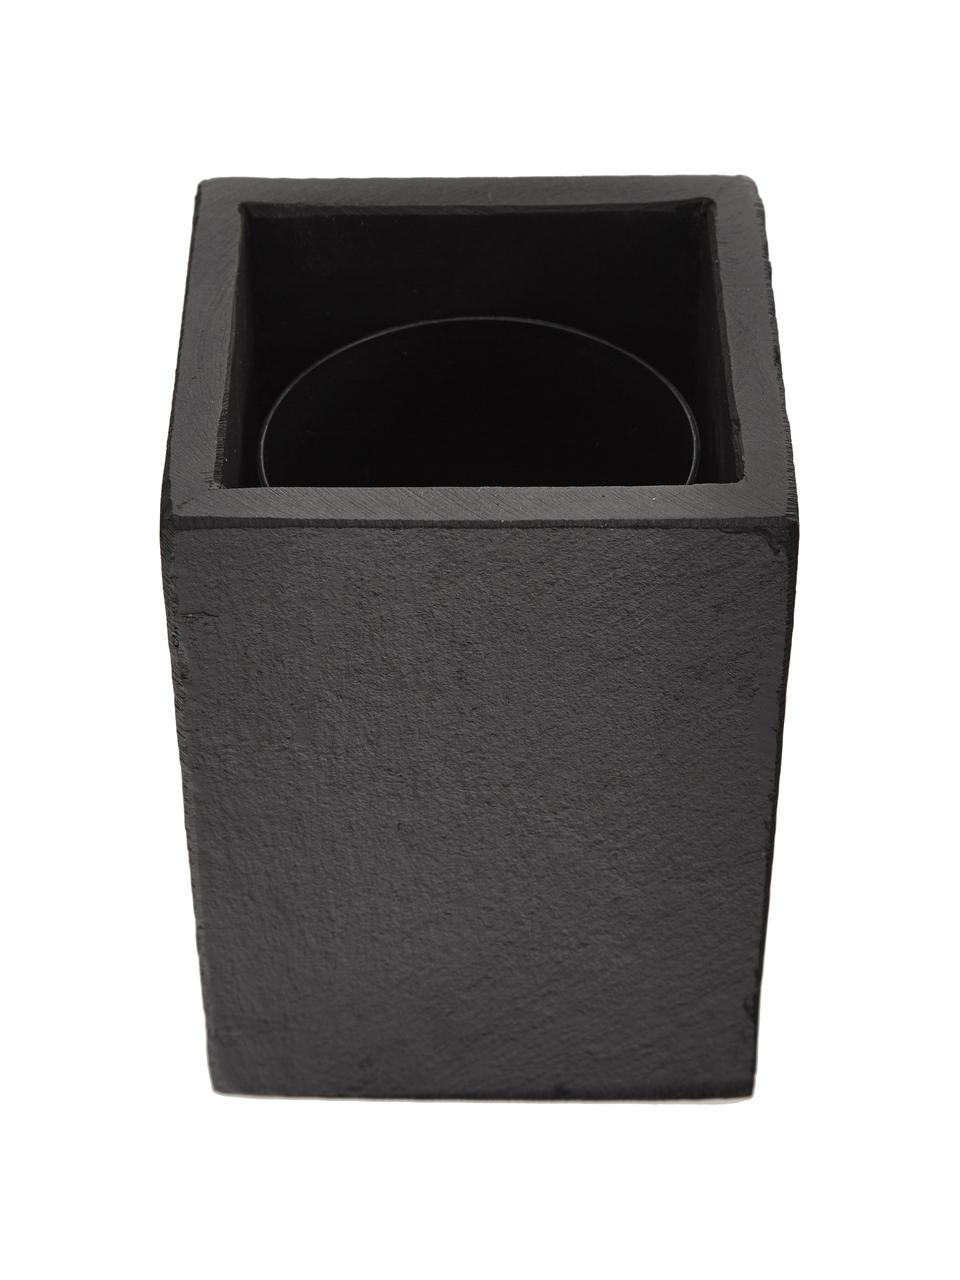 Toilettenbürste Nero mit Schiefer-Behälter, Schiefer, Edelstahl, Kunststoff, Dunkelgrau, H 41 cm